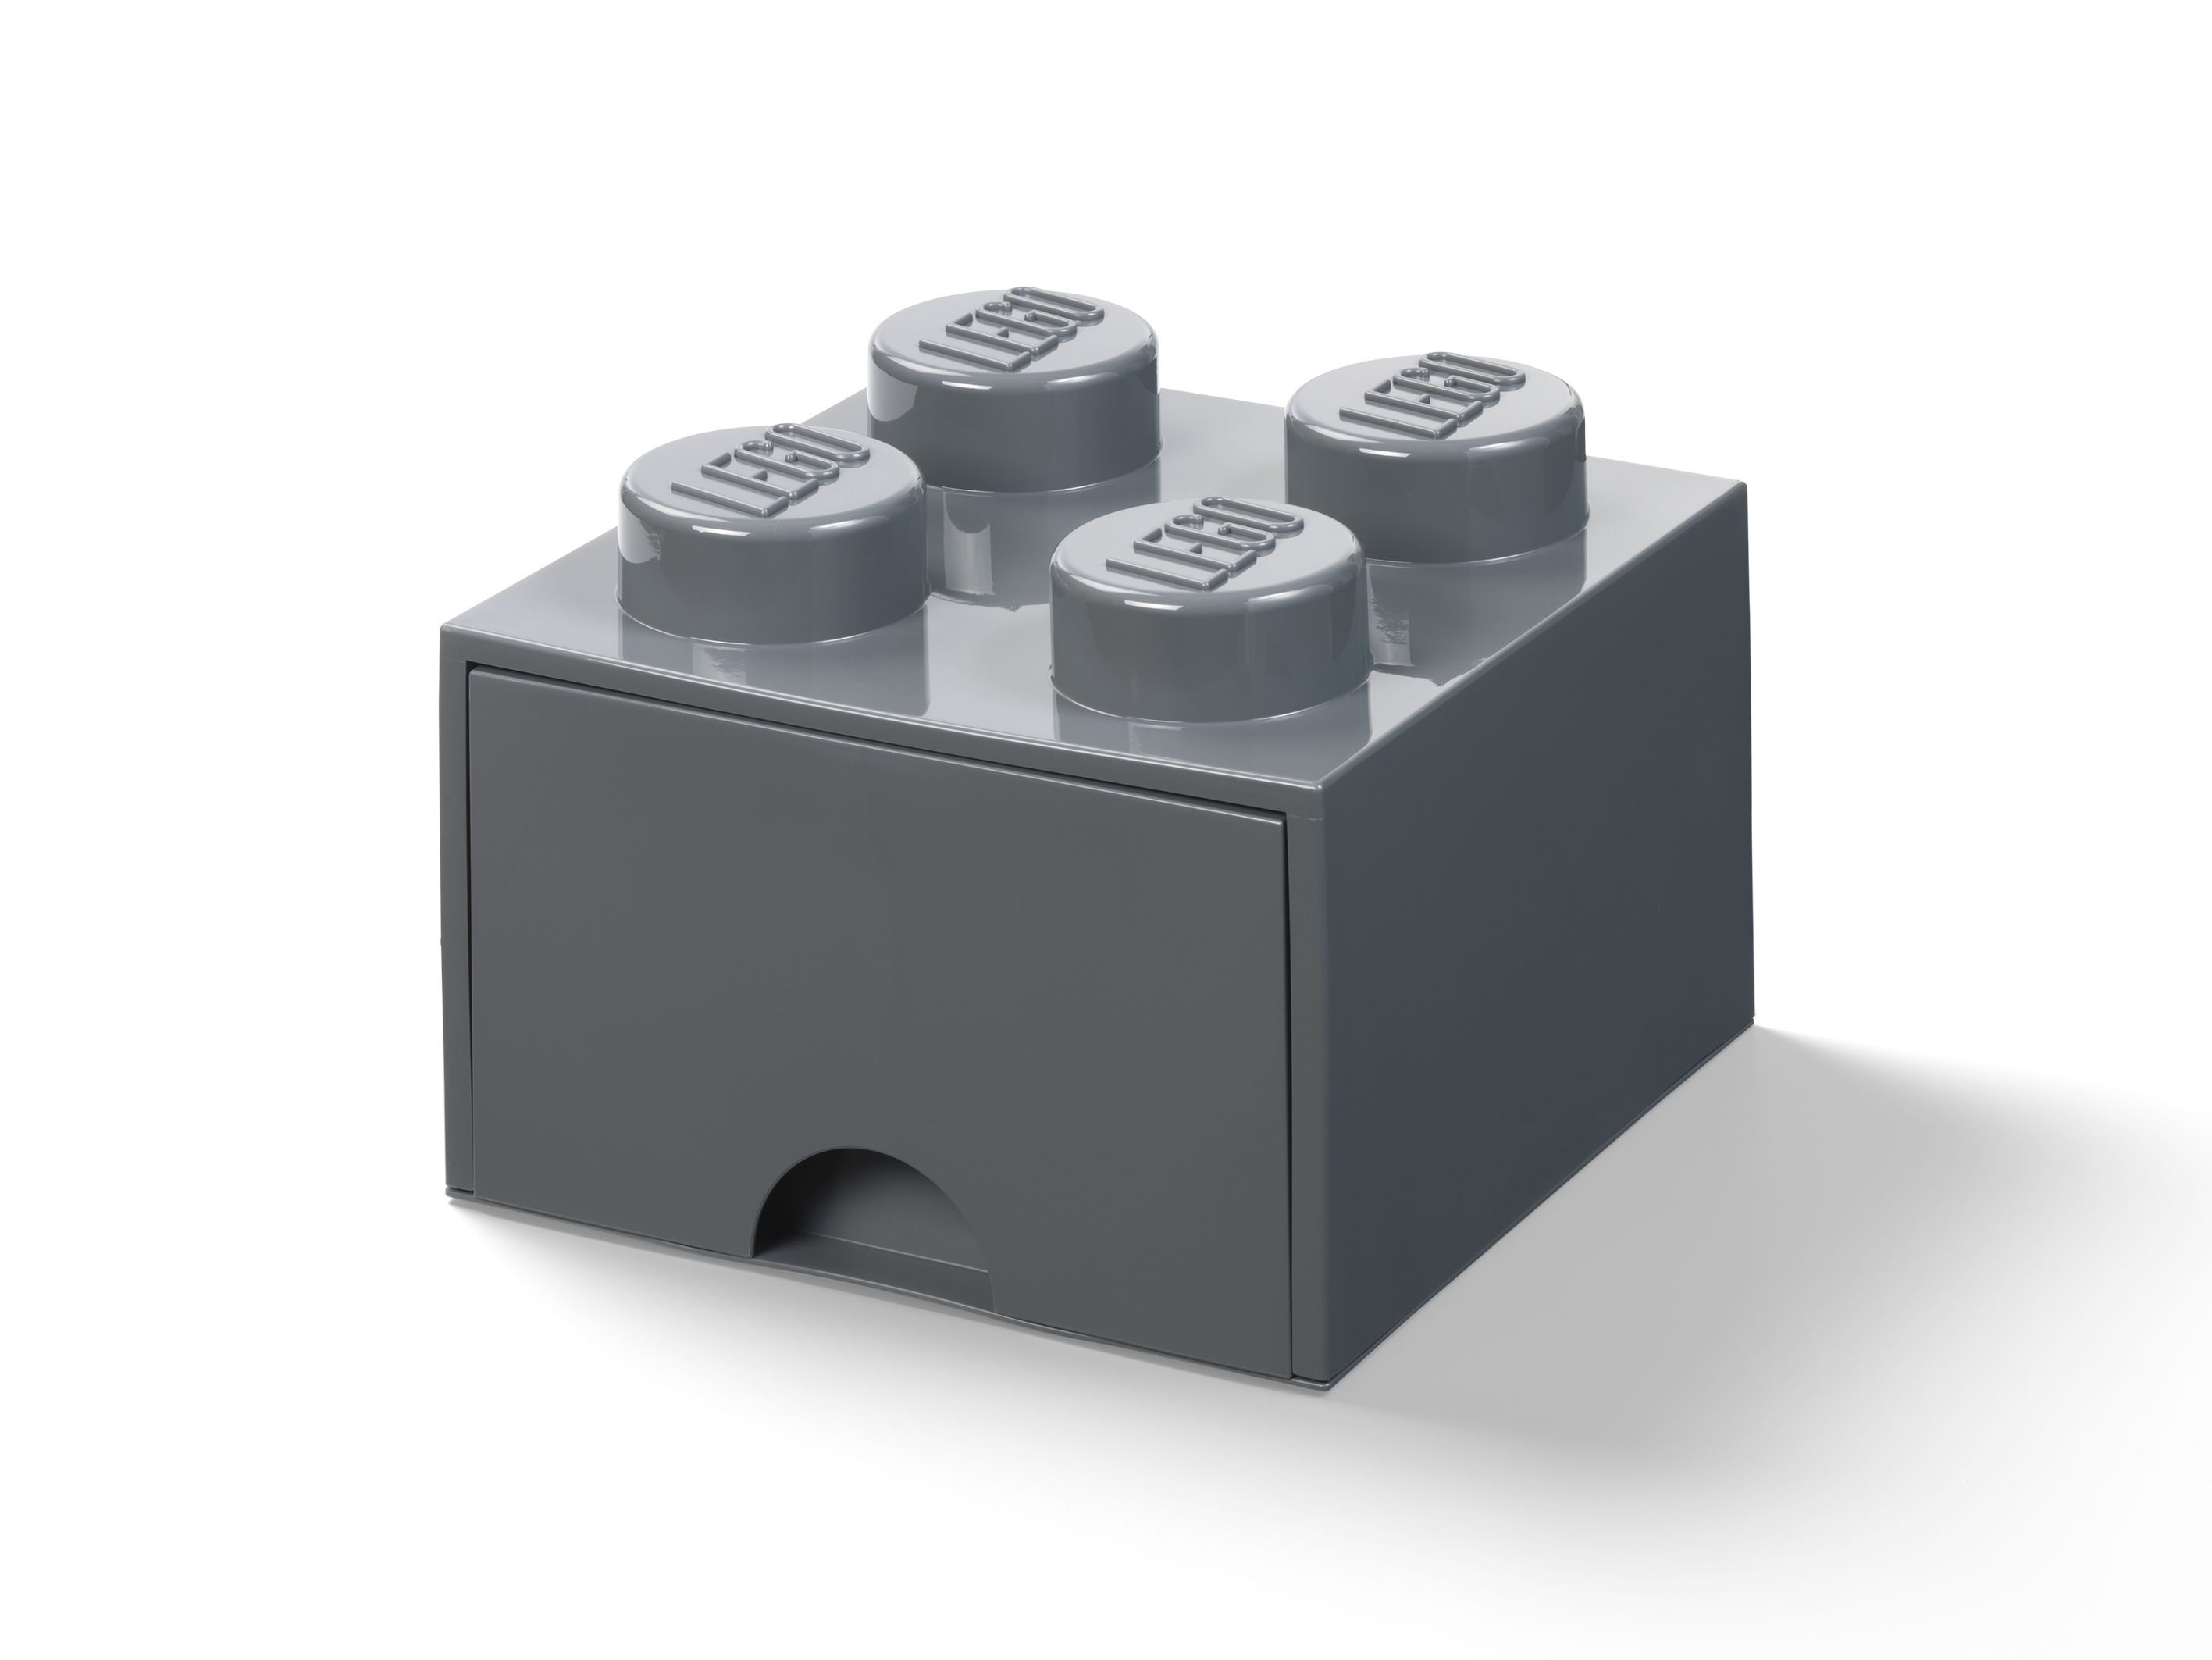 LEGO Gear 5006328 Stein mit 4 Noppen und Schubfach in Dunkelgrau LEGO_5006328.jpg